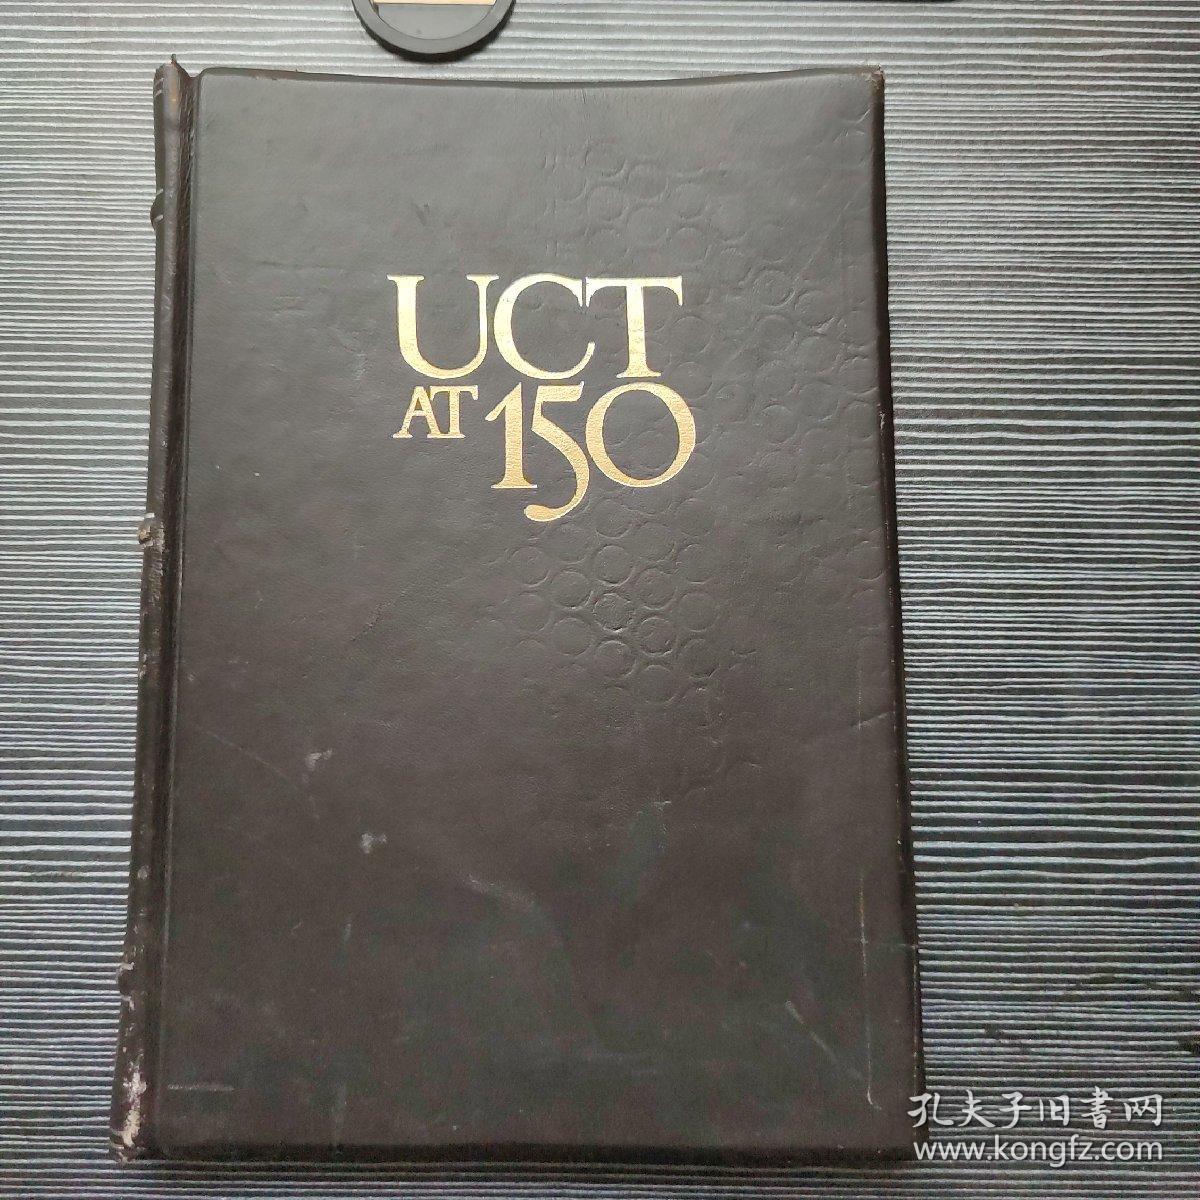 UCT AT 150 REFLECTIONS 1979  皮面精装